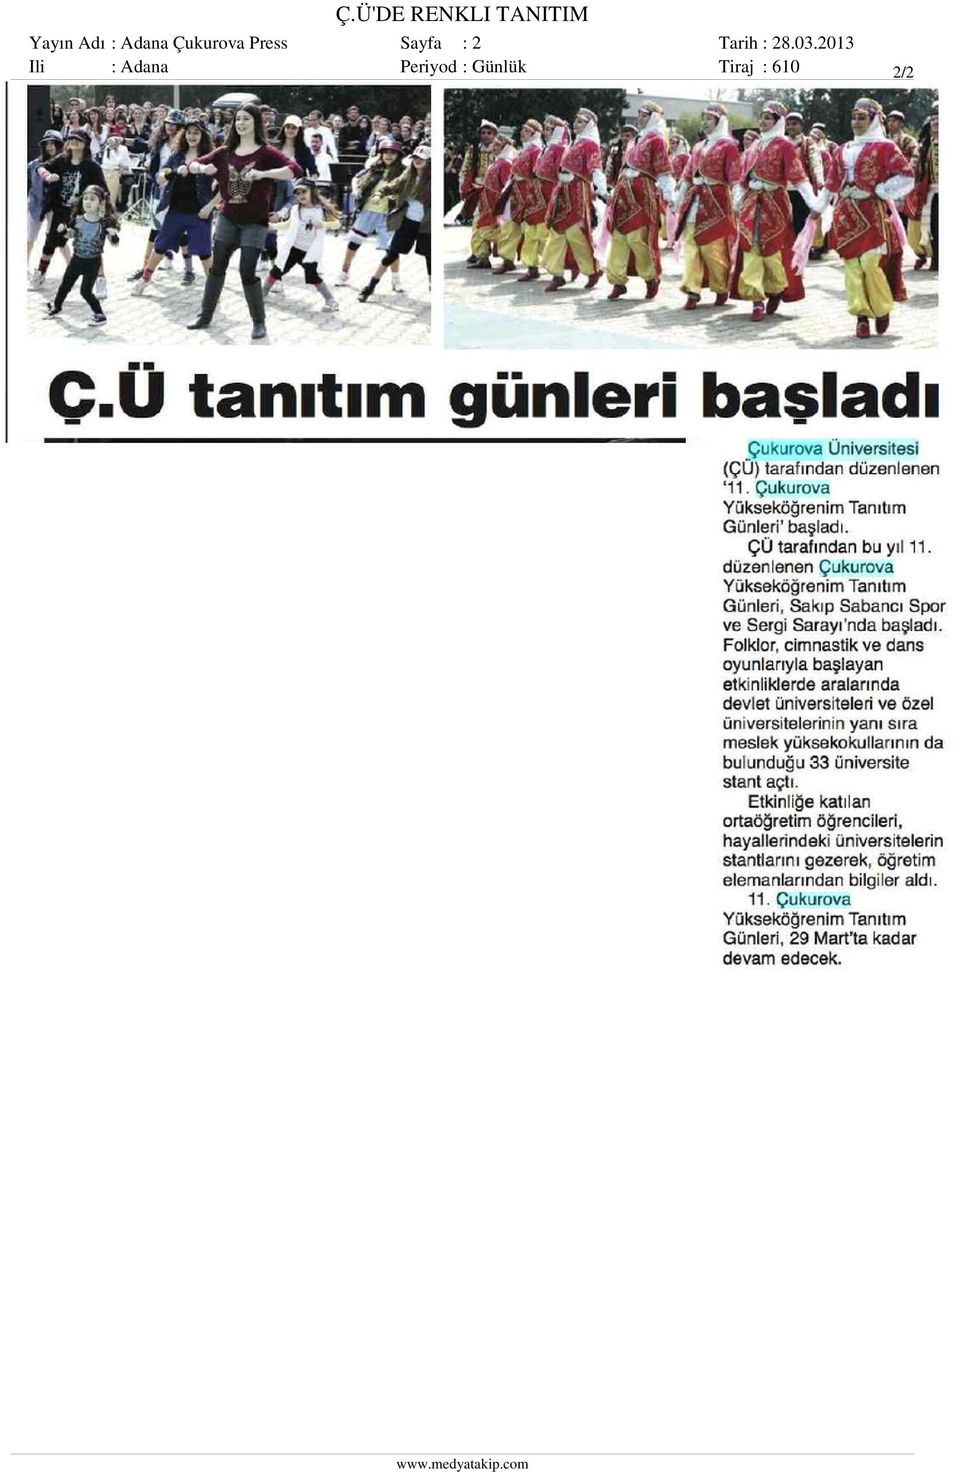 Sayfa : 2 Ili : Adana